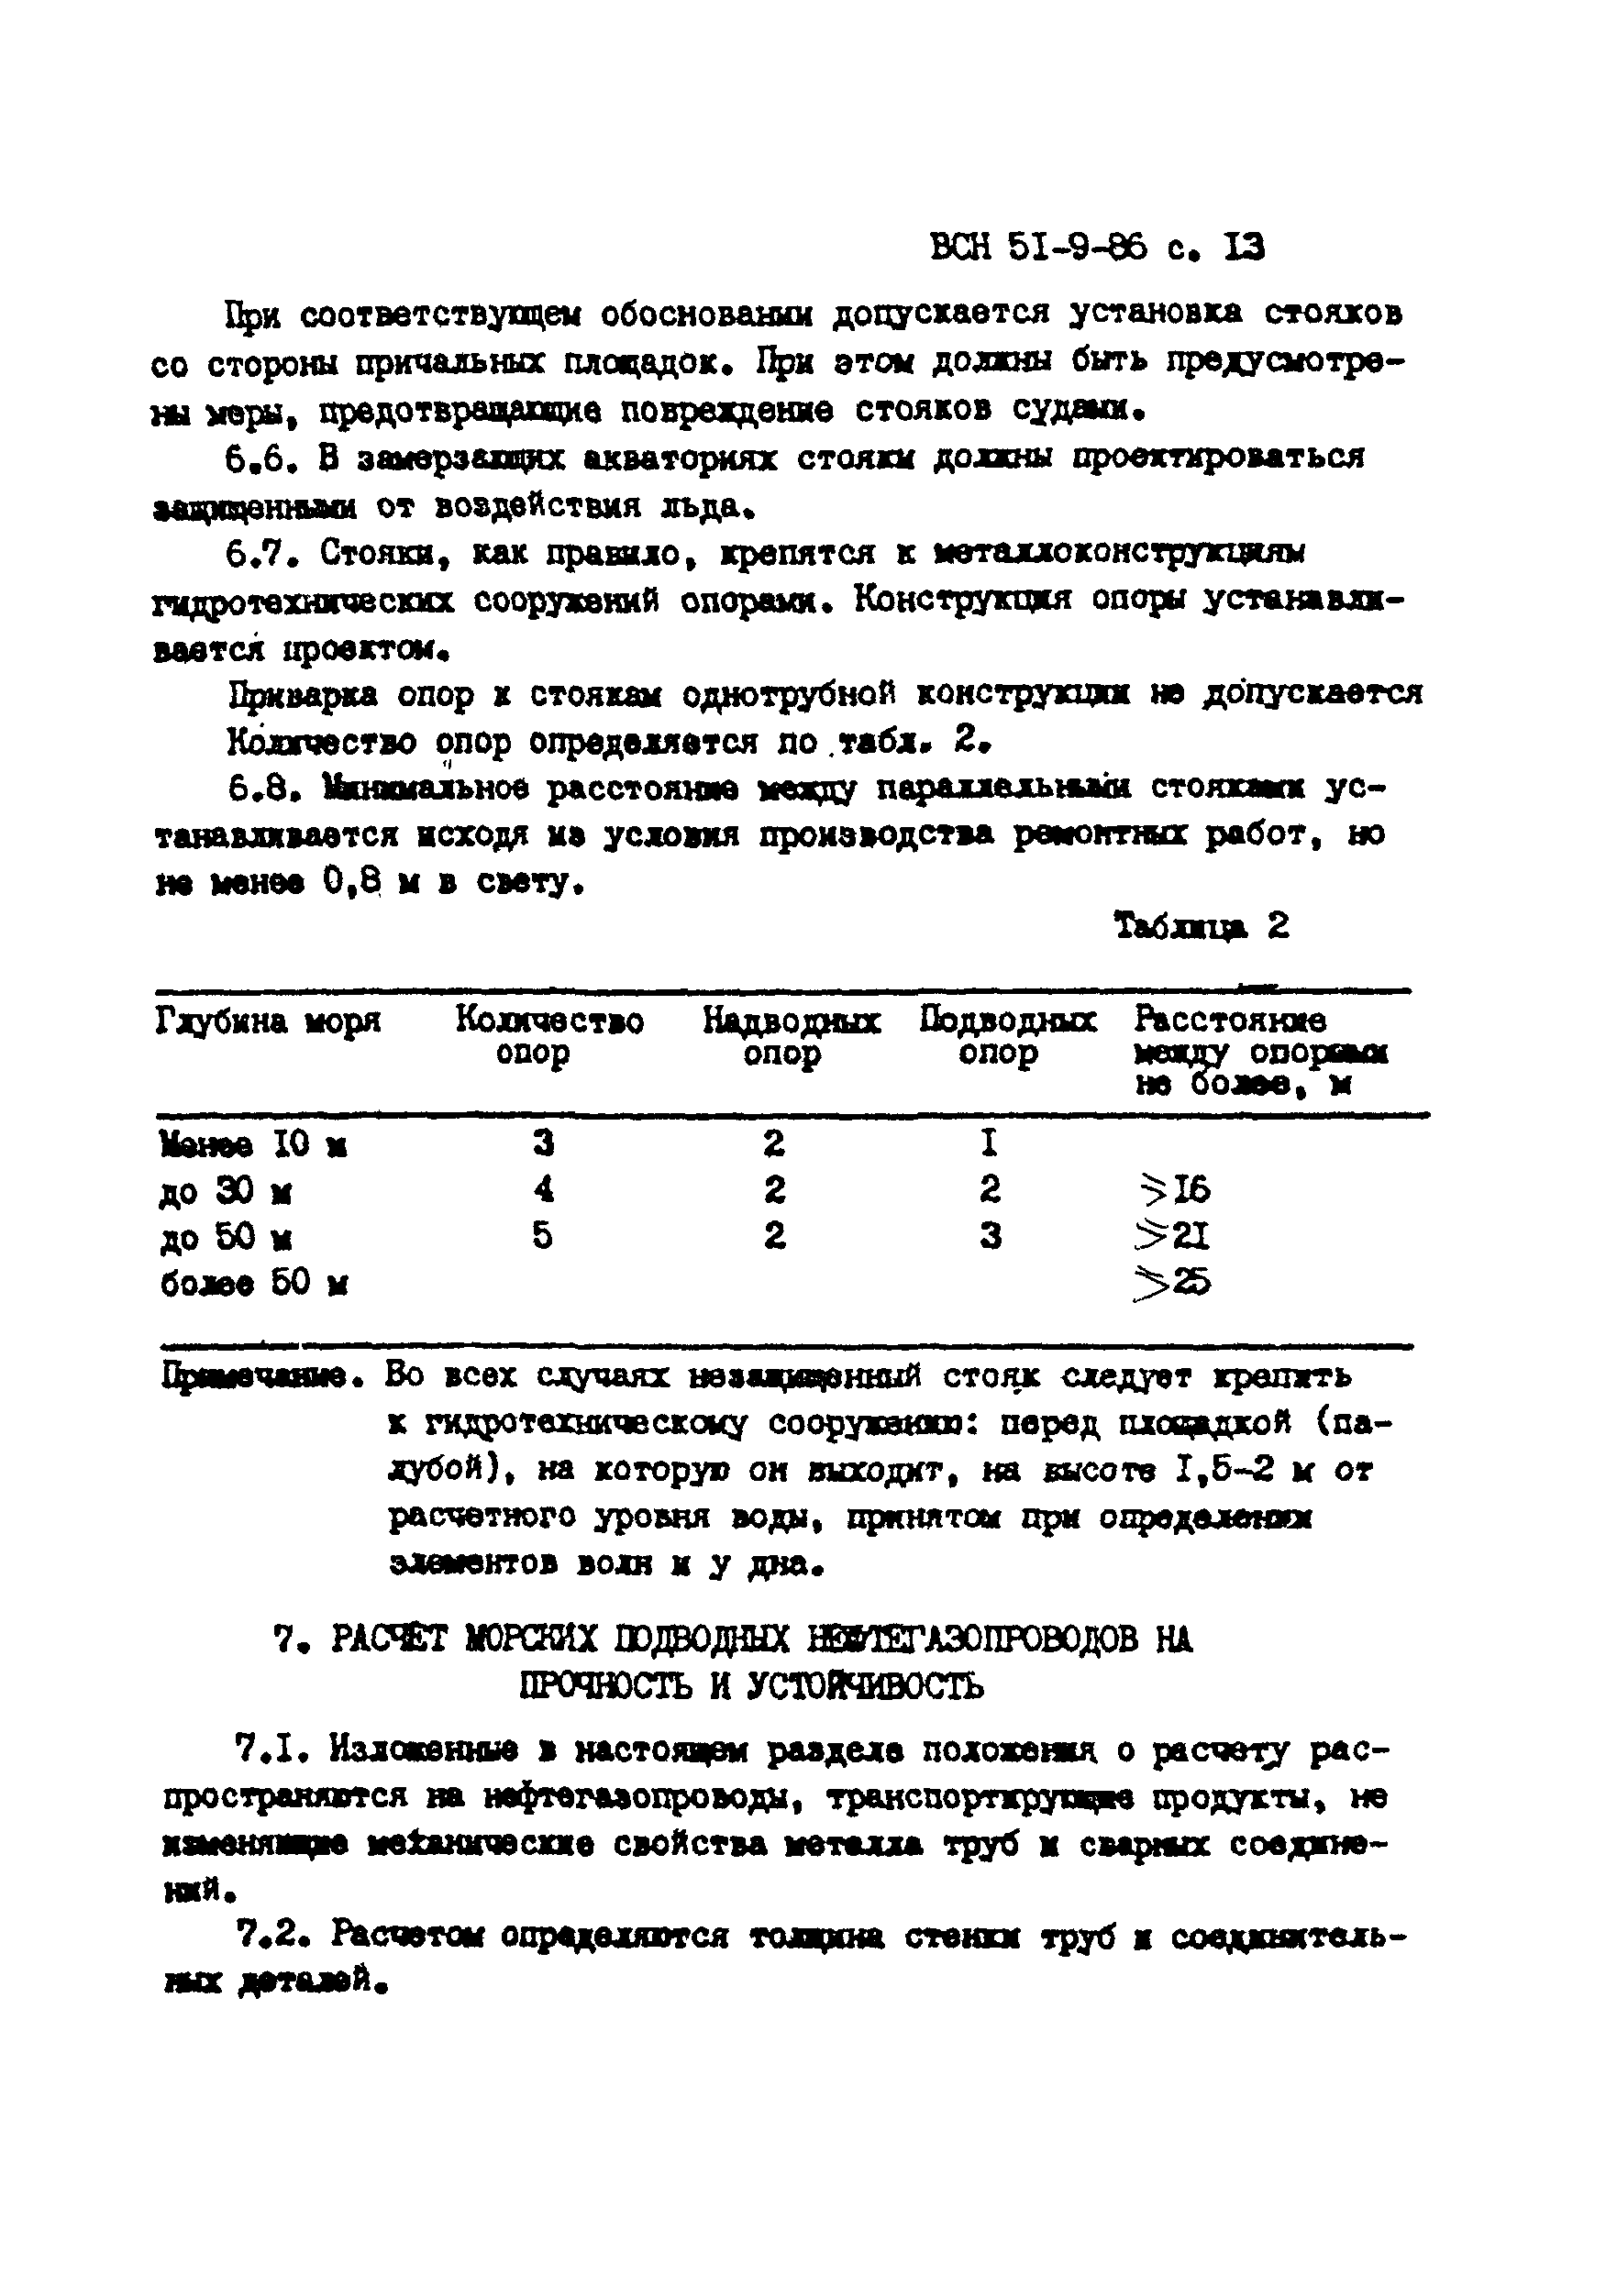 ВСН 51-9-86